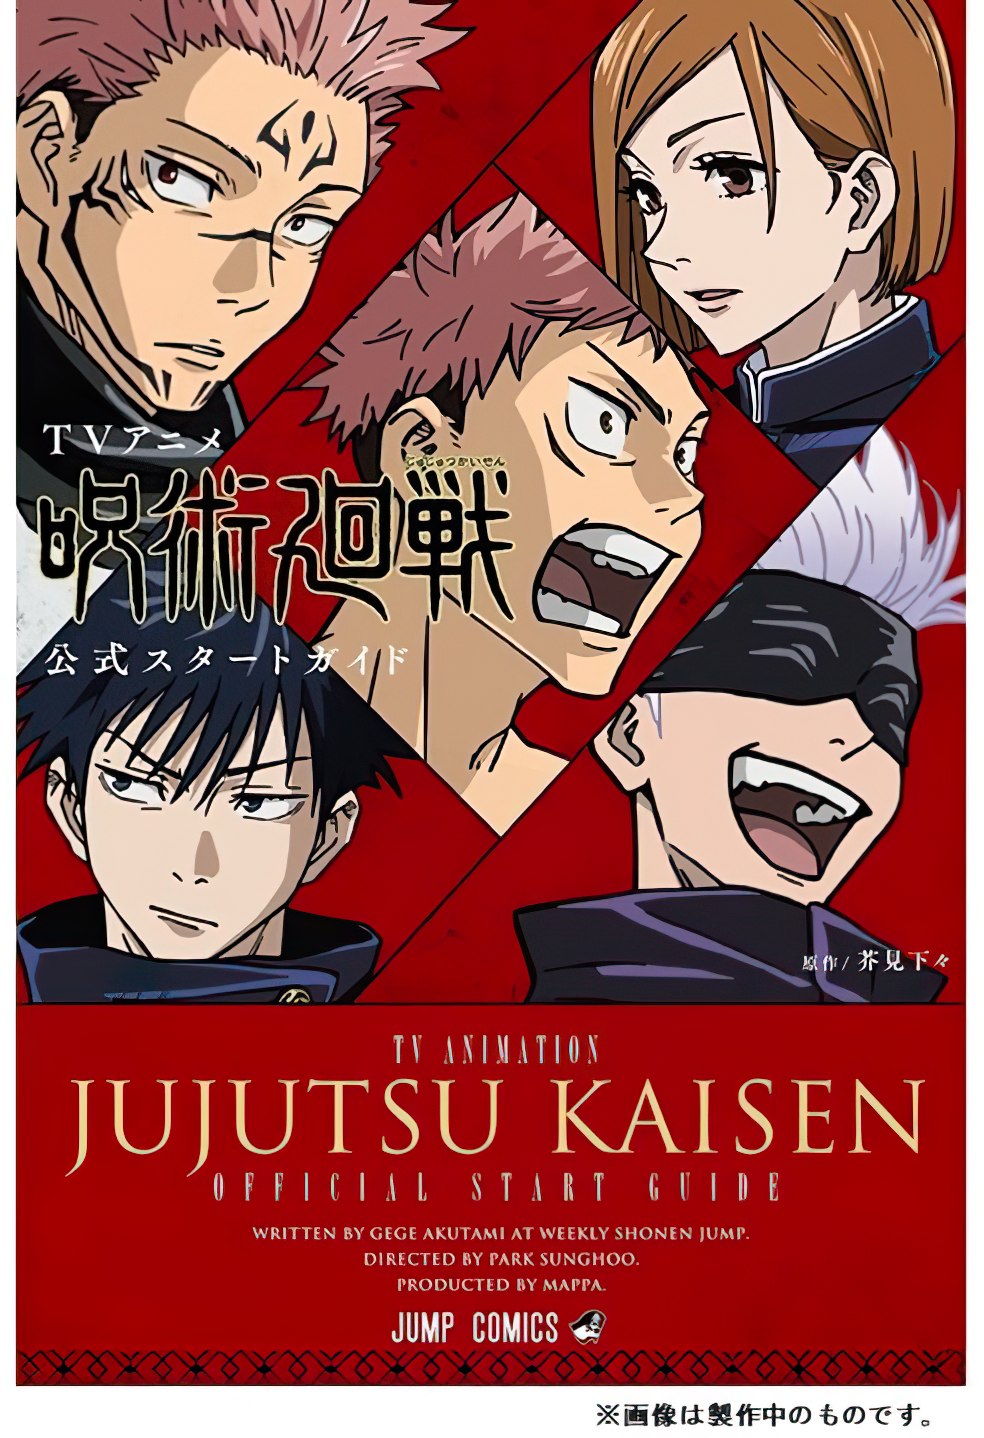 El anime Jujutsu Kaisen revela la portada de su guía oficial | SomosKudasai